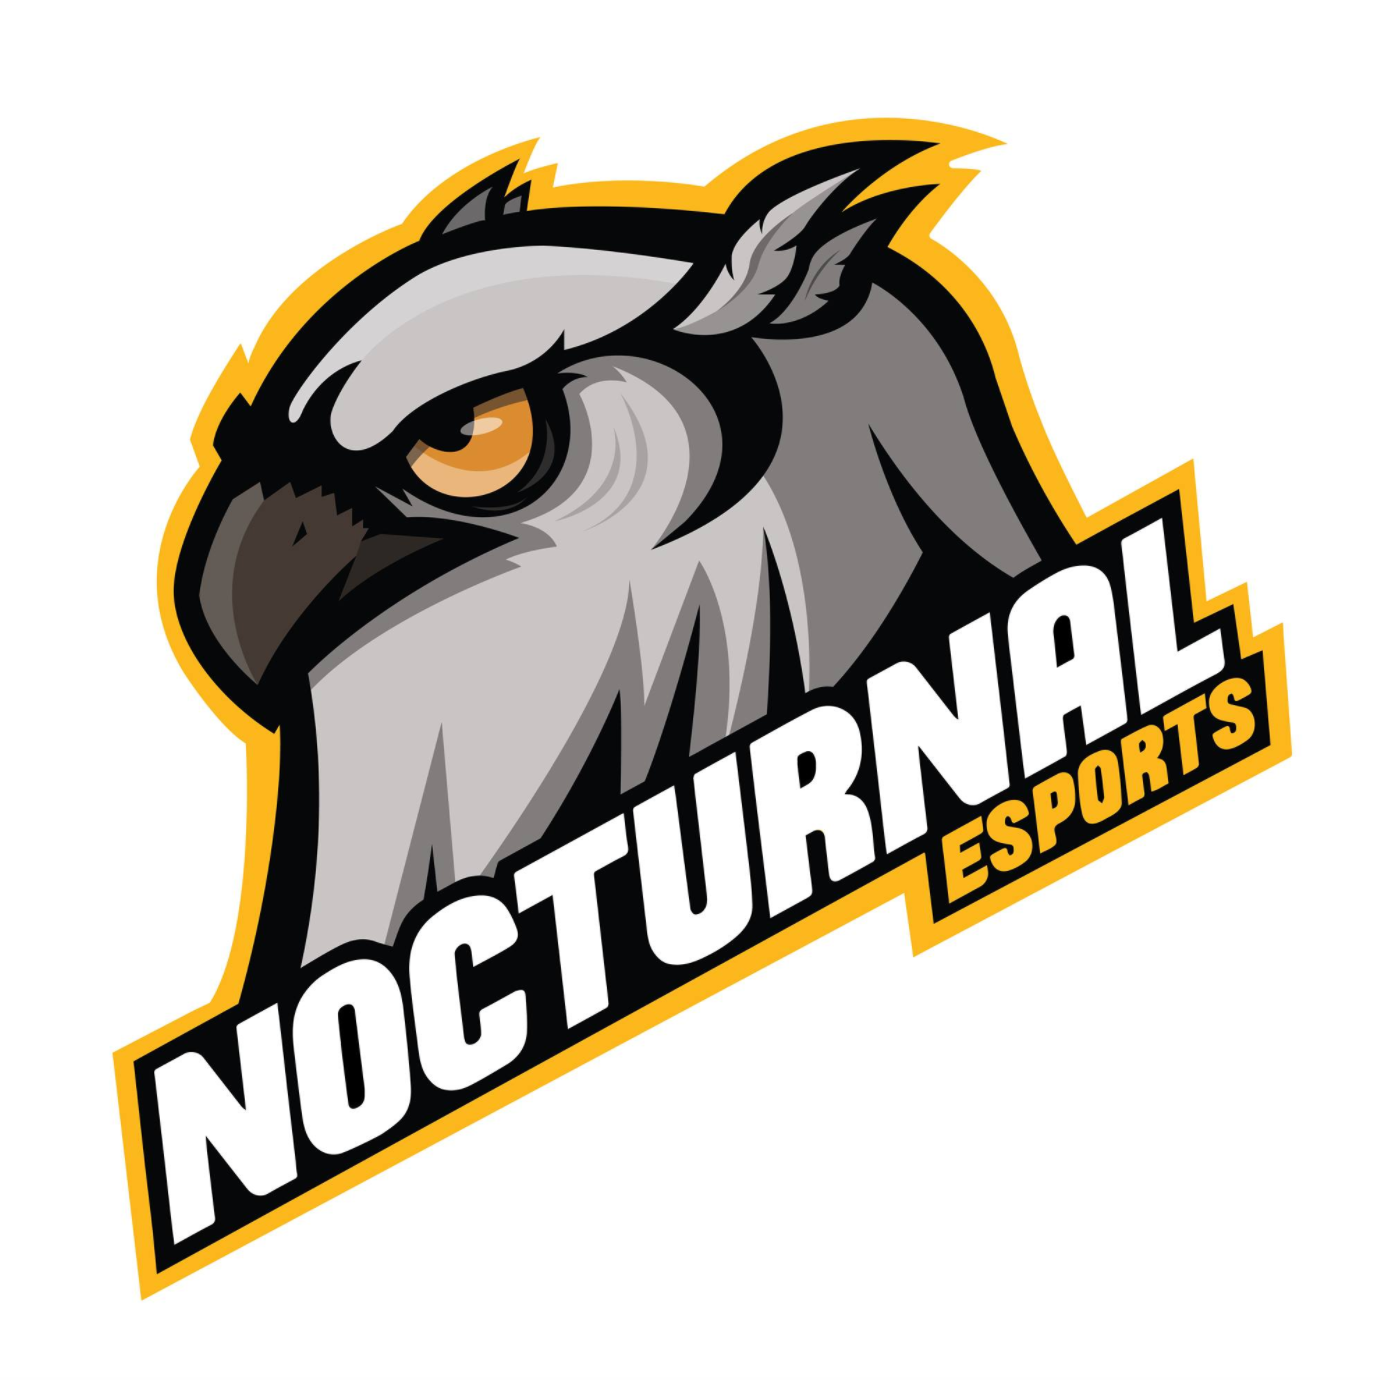 Nocturnal's third logo